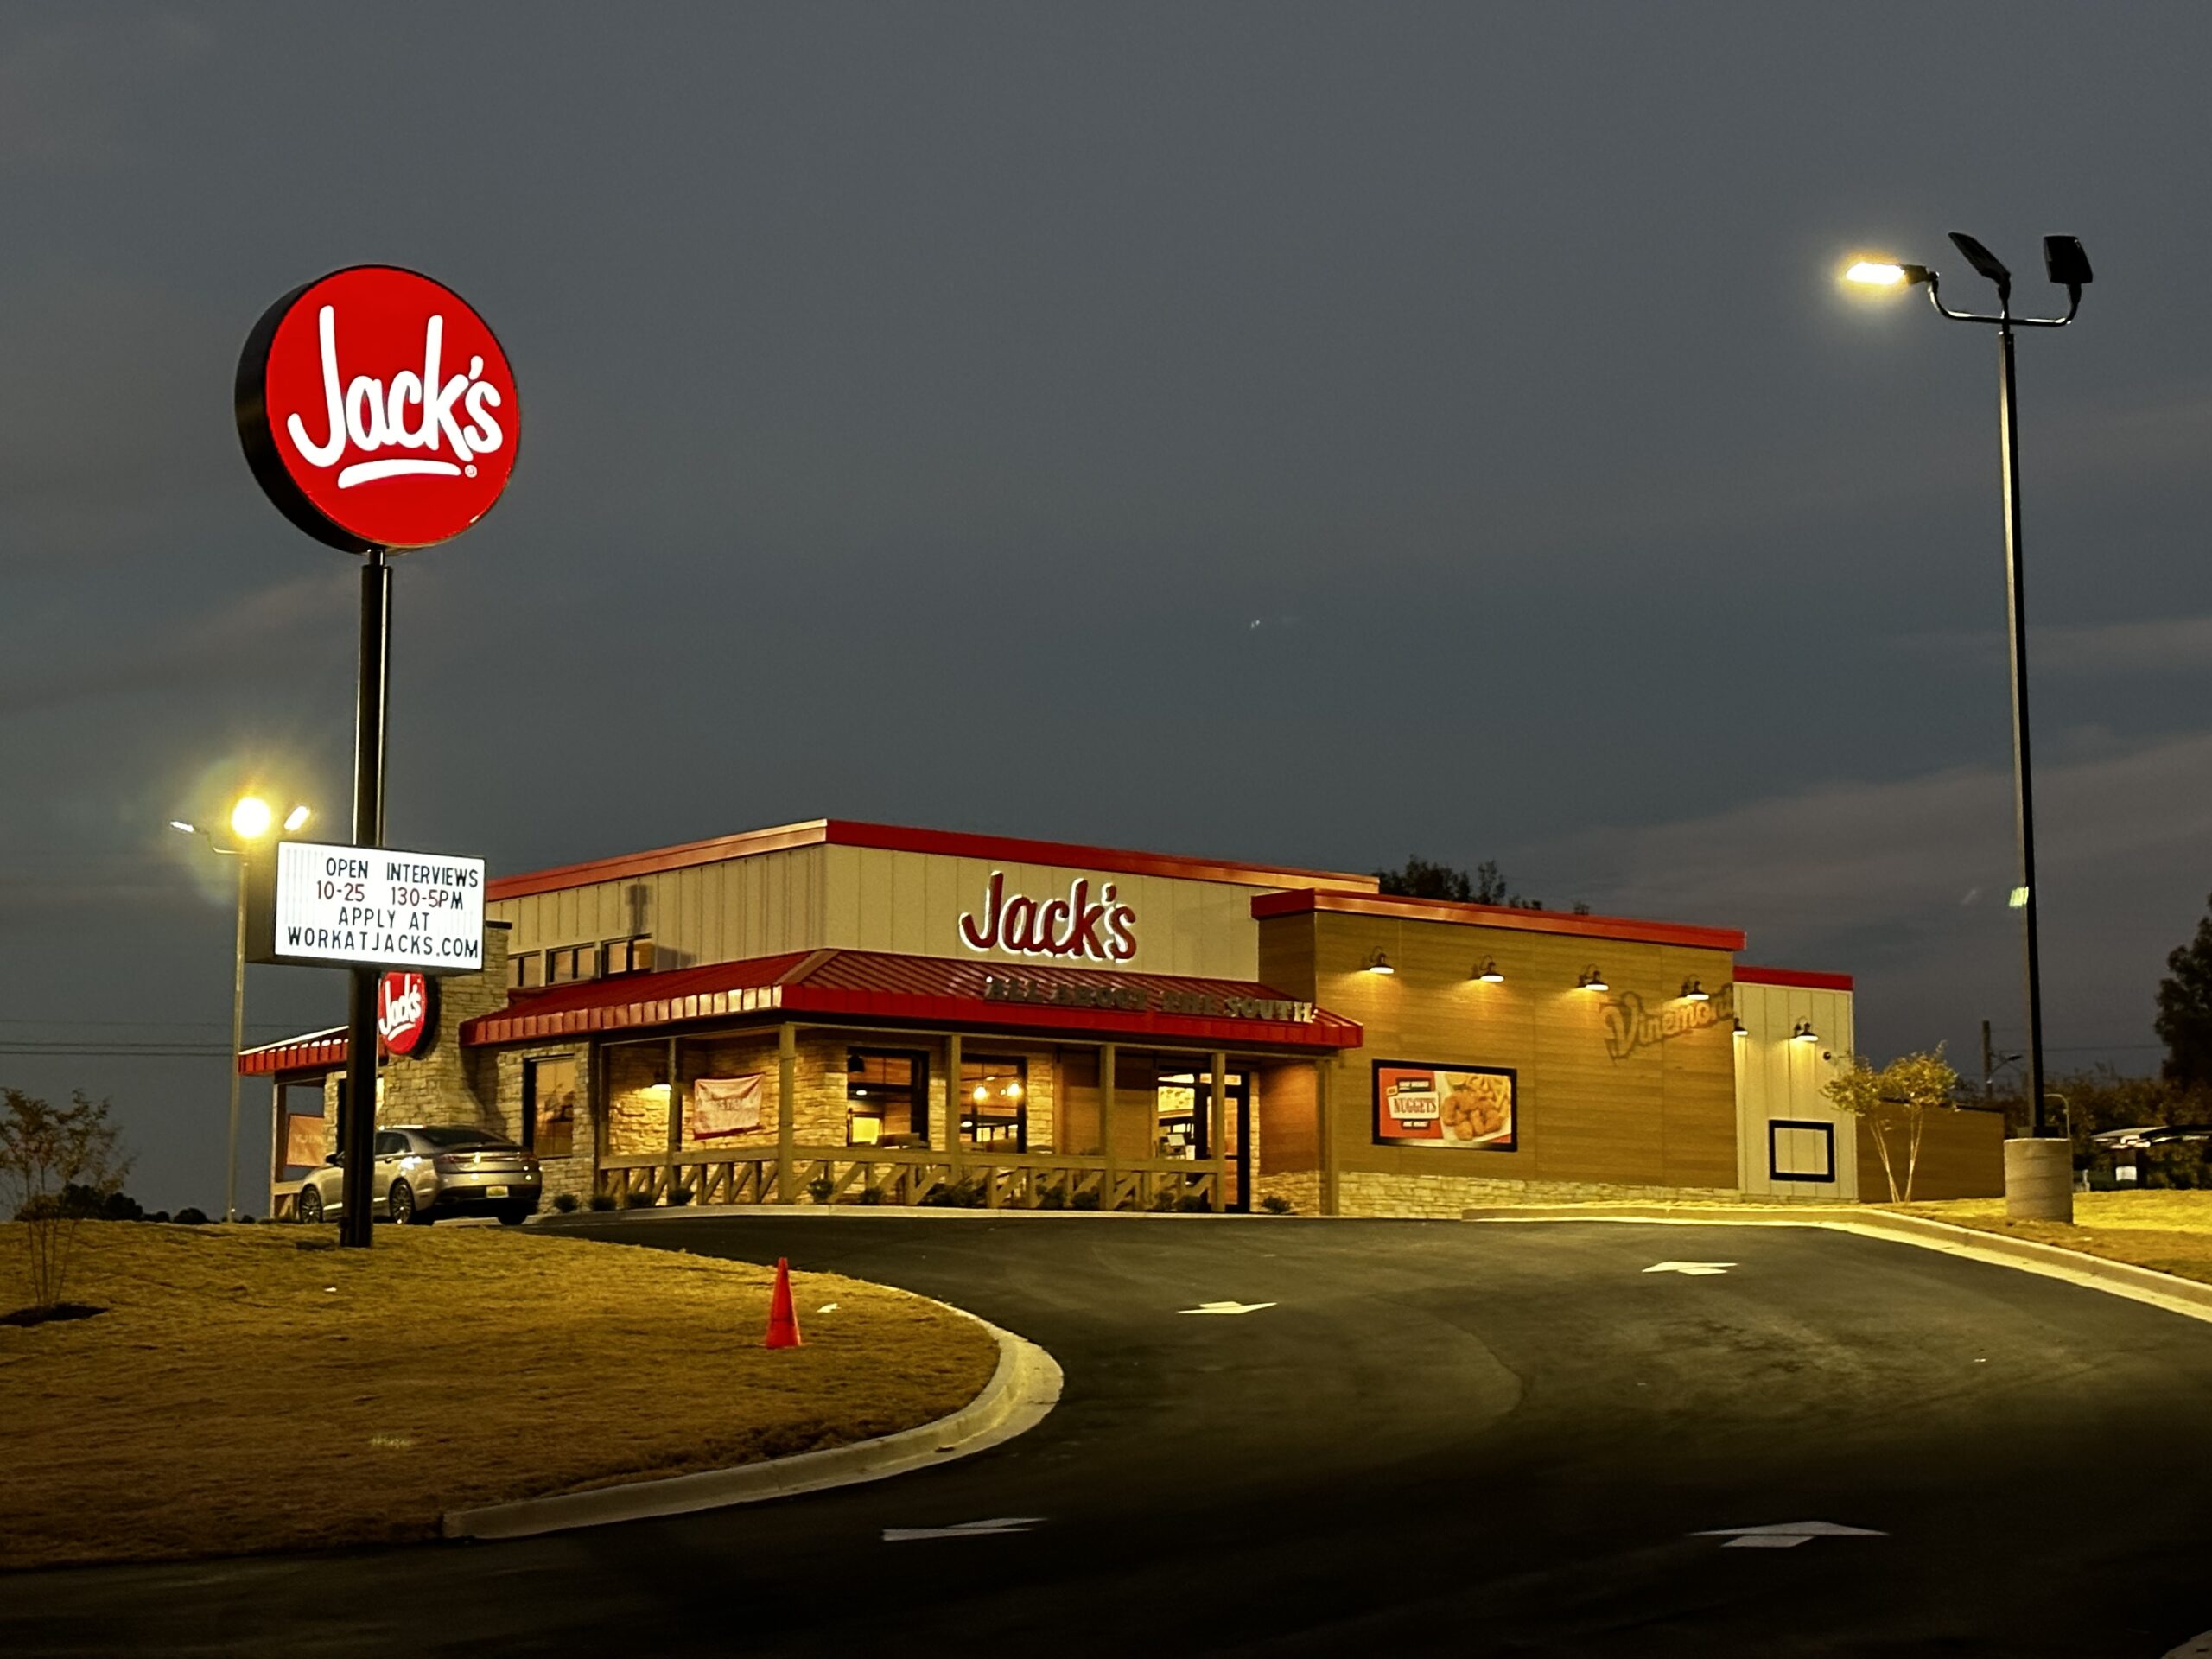 December 30, 2019 – Jack's Family Restaurants